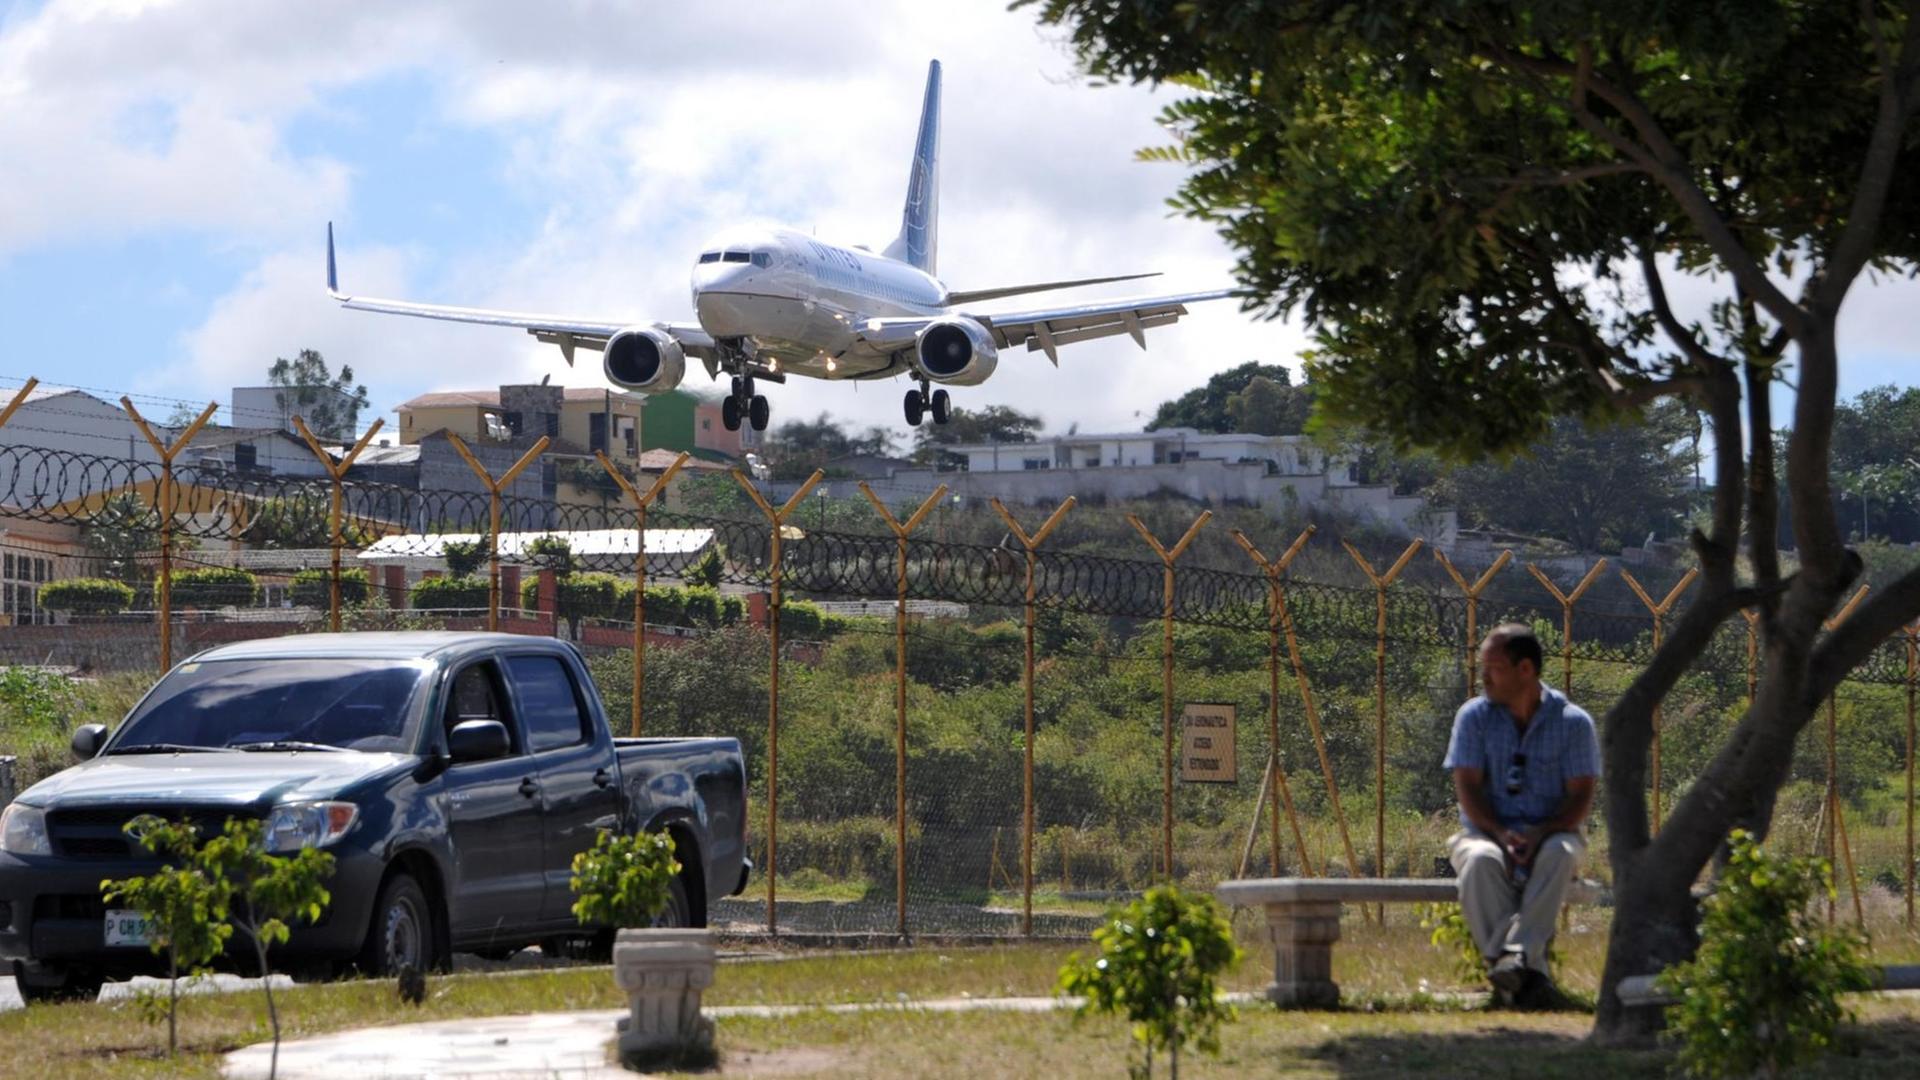 Der Toncontin International Airport, Hauptflughafen in Honduras, ist wegen der hohen Berge ringsherum sehr schlecht anzufliegen. Deshalb wird außerhalb ein neuer Flughafen gebaut.